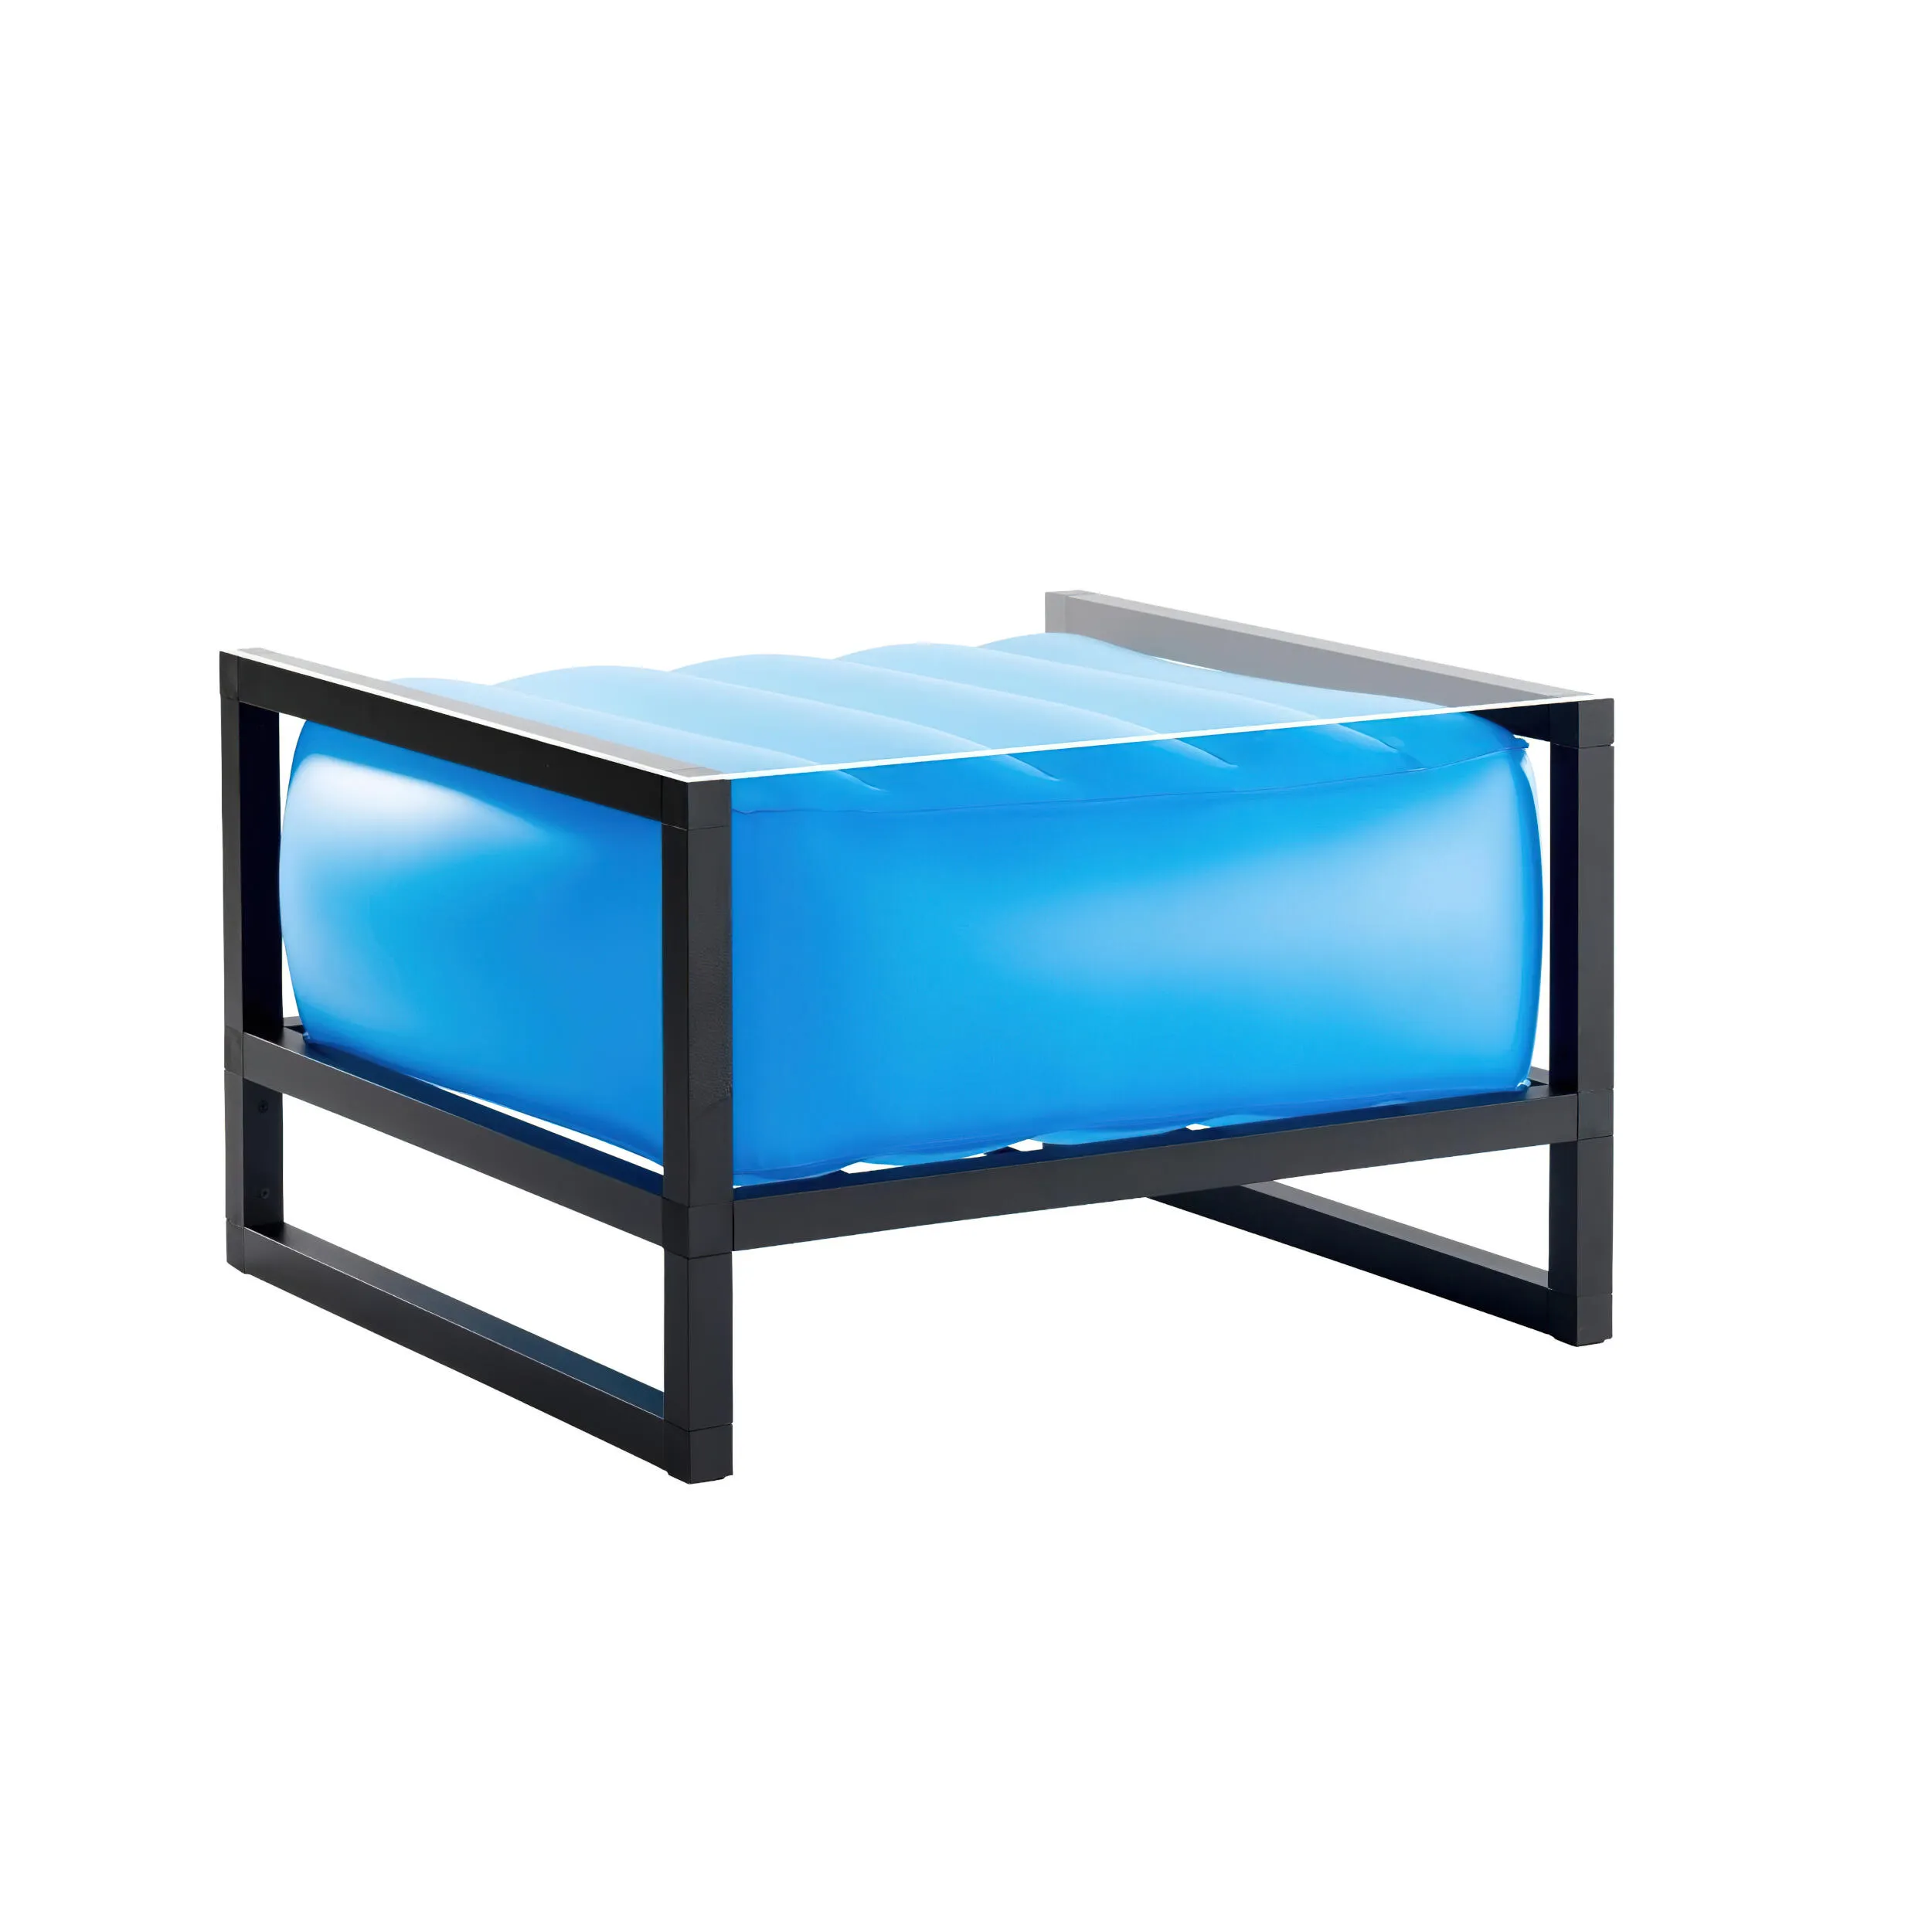 tavolino da salotto Yomi eko illuminato struttura in legno nero, dimensioni 62x70xH40 cm peso 14 kg, seduta gonfiabile in TPU colore blu traslucido